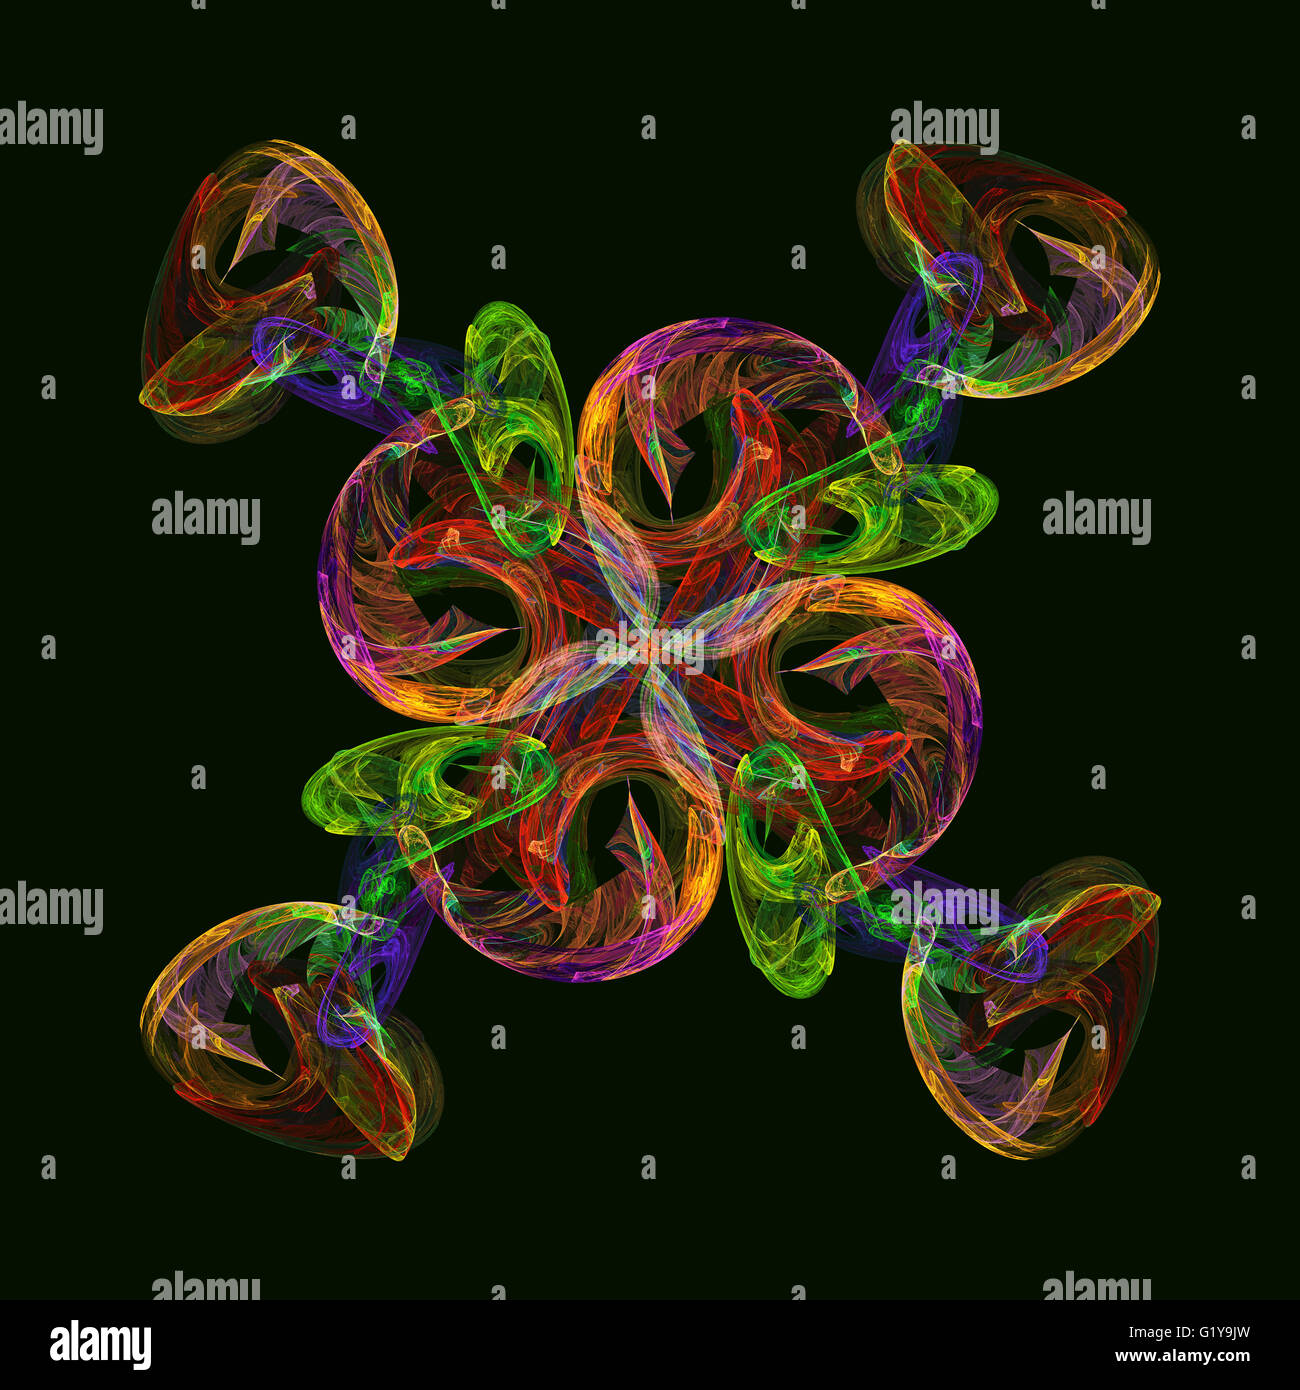 Abstract swirl fractale dans des couleurs au néon sur fond vert sombre Banque D'Images